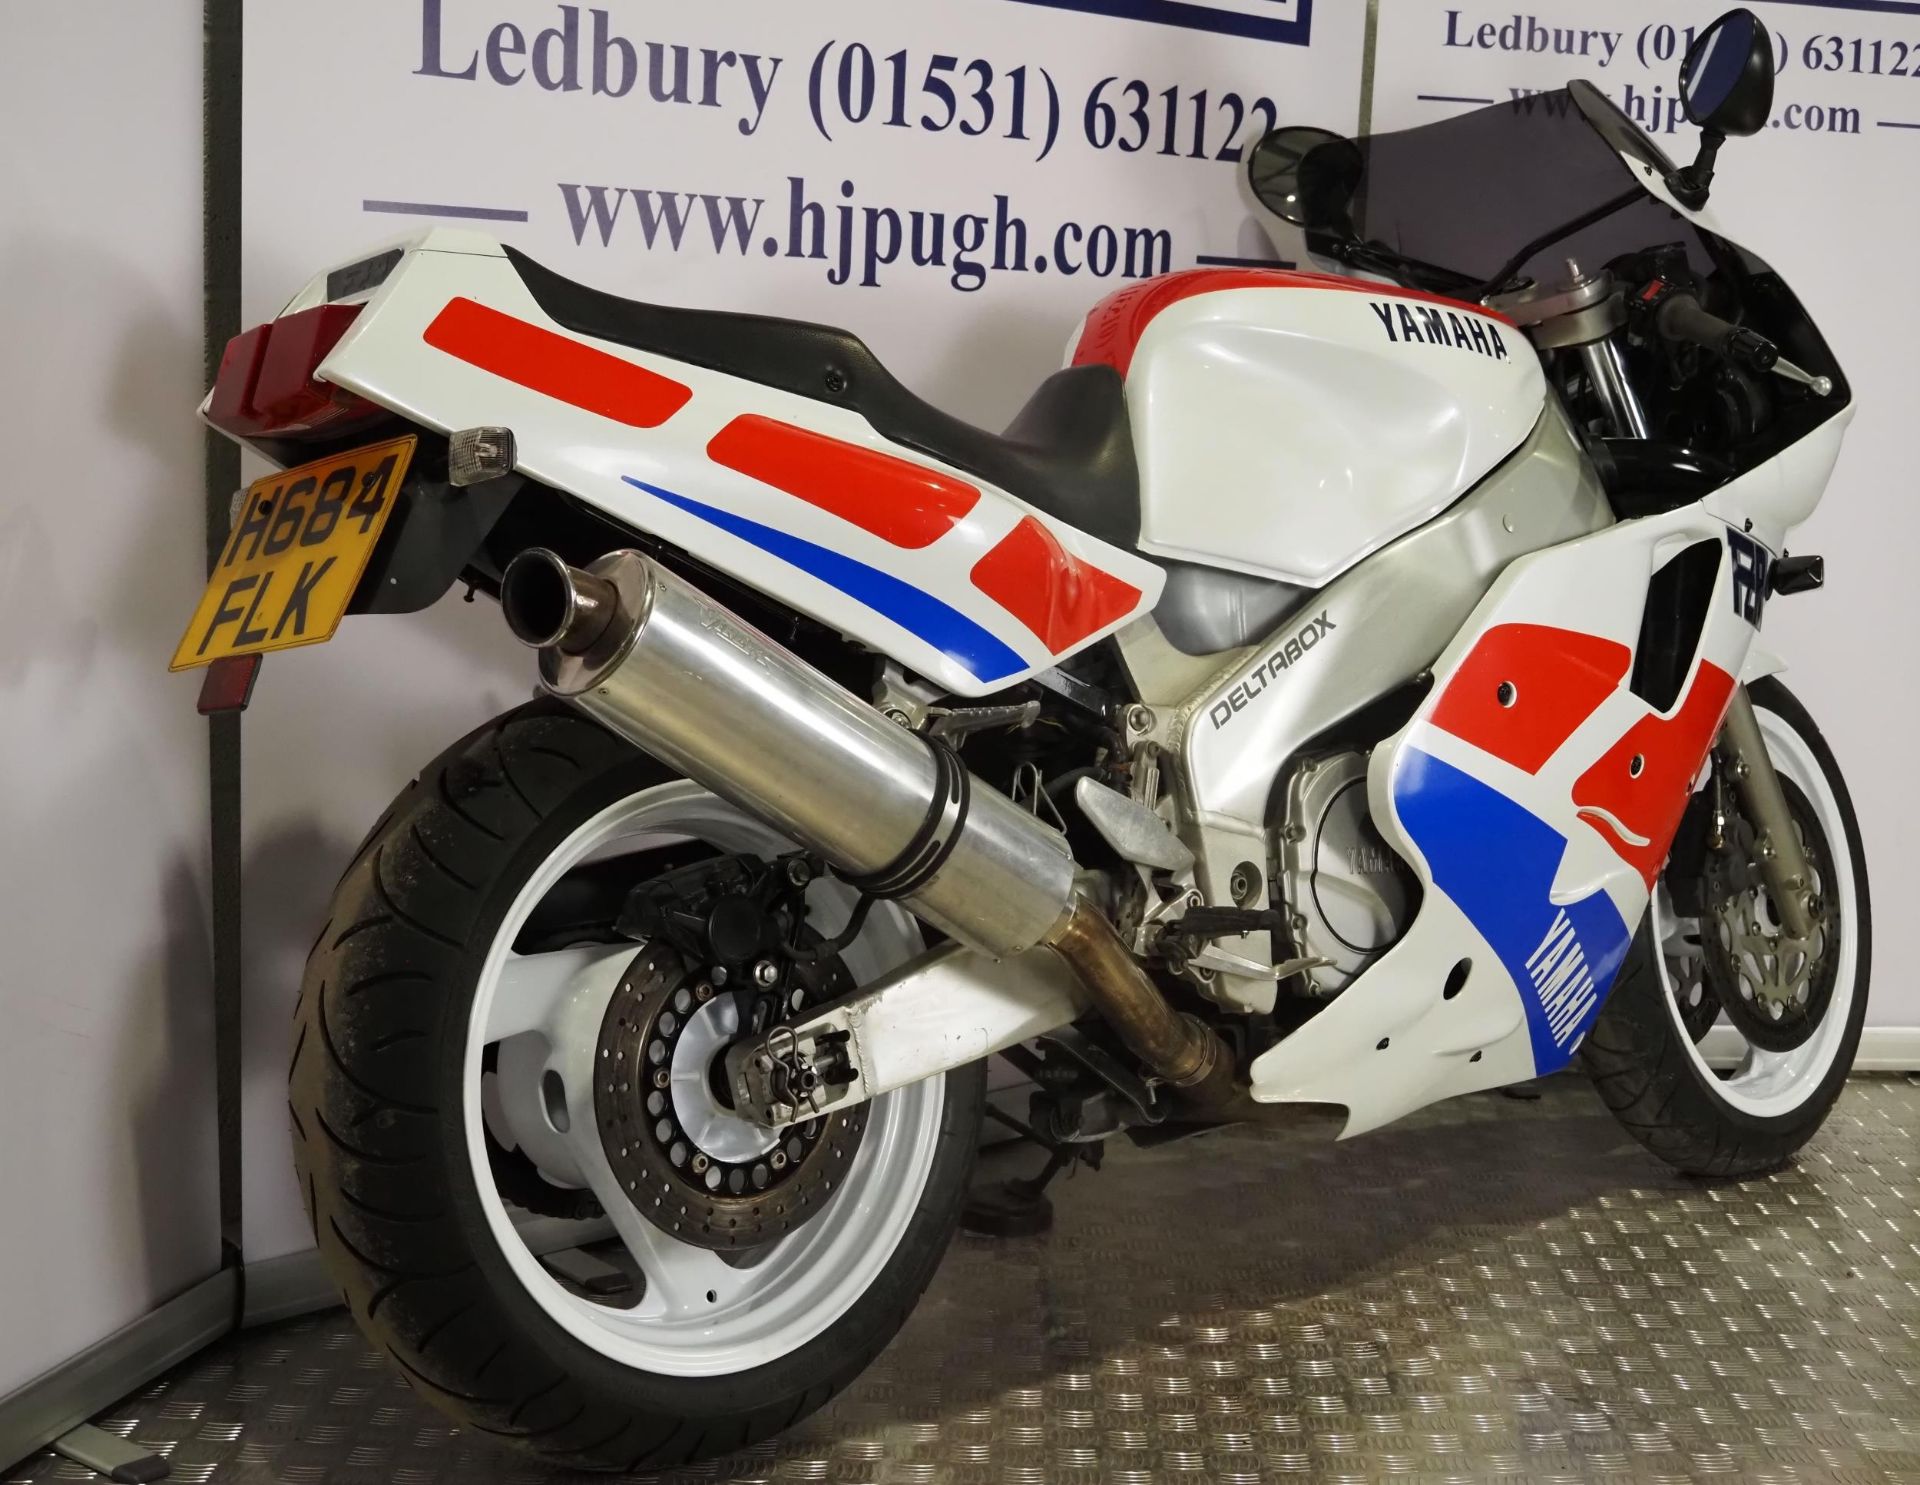 Yamaha FZR1000 exup motorcycle. 1990. 1002cc Runs and rides. Reg. H684 FLK. V5. Key - Image 4 of 7